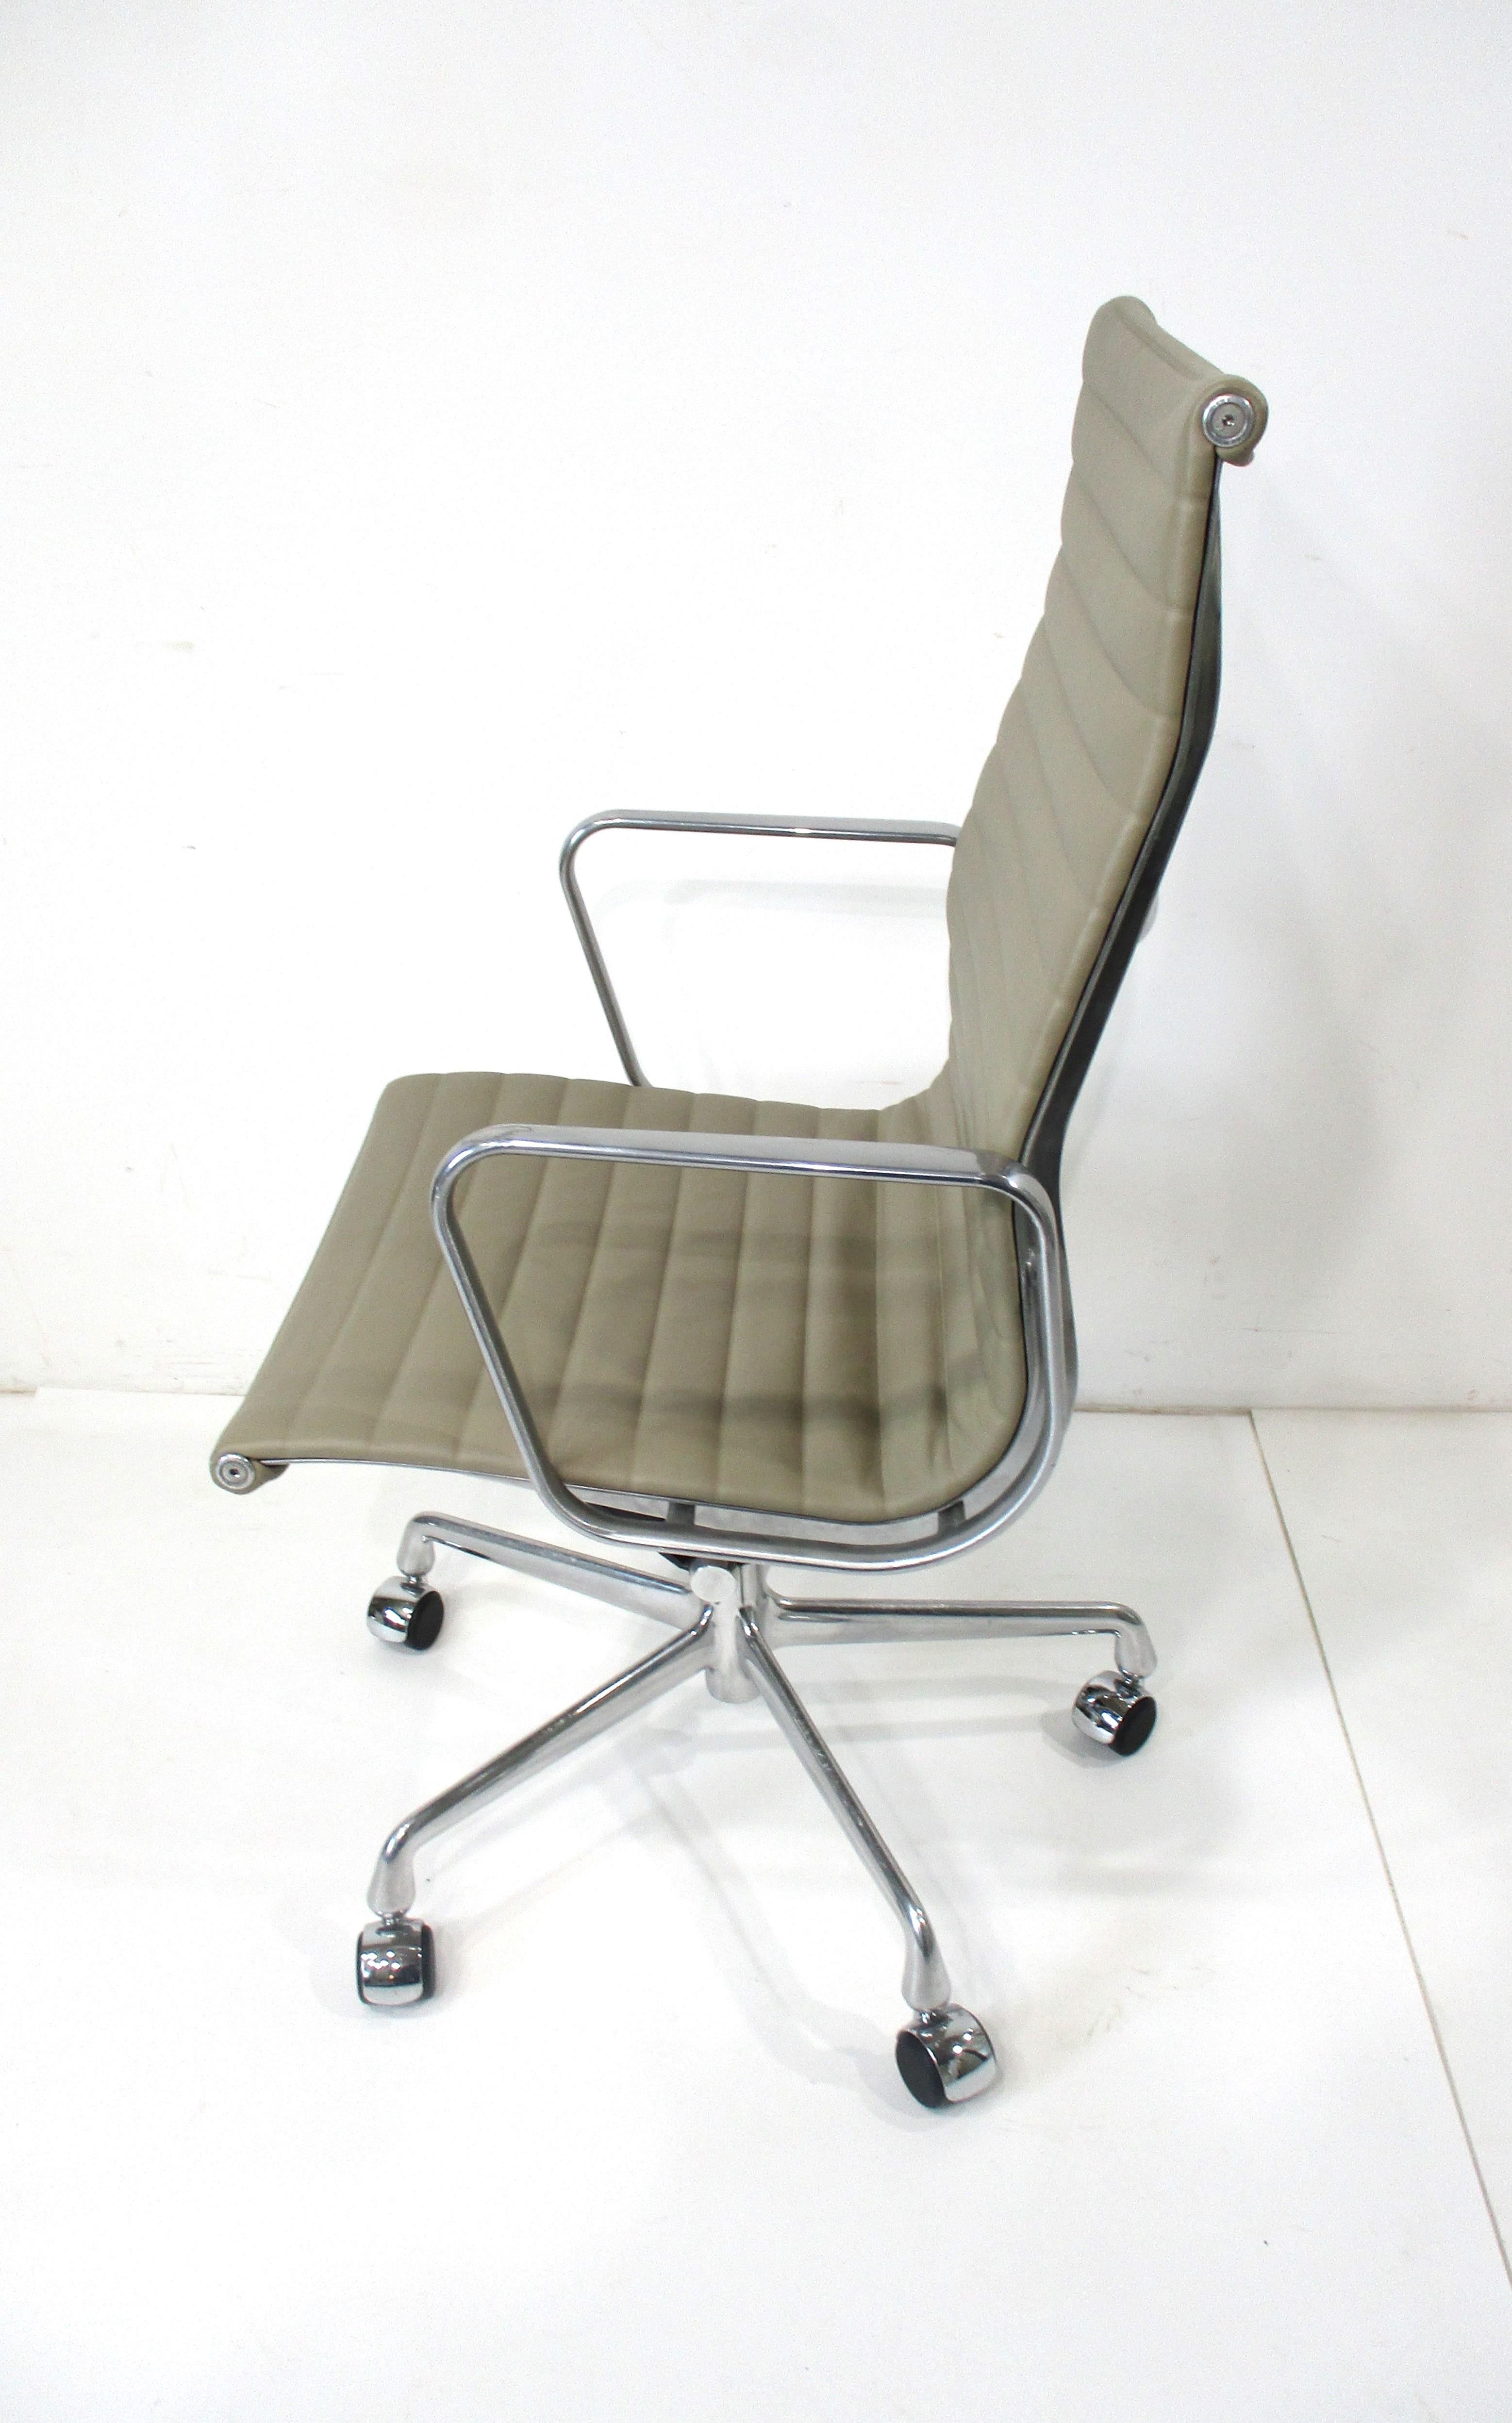 Ein rollender Aluminium-Gruppenstuhl mit hoher Rückenlehne in der 50th Anniversary Edition 1958 - 2008. Gepolstert in einem glatten und weichen Taupe Spinney zurück Leder nur für diese Ausgabe mit poliertem Aluminium Stern Basis. Dieser ikonische